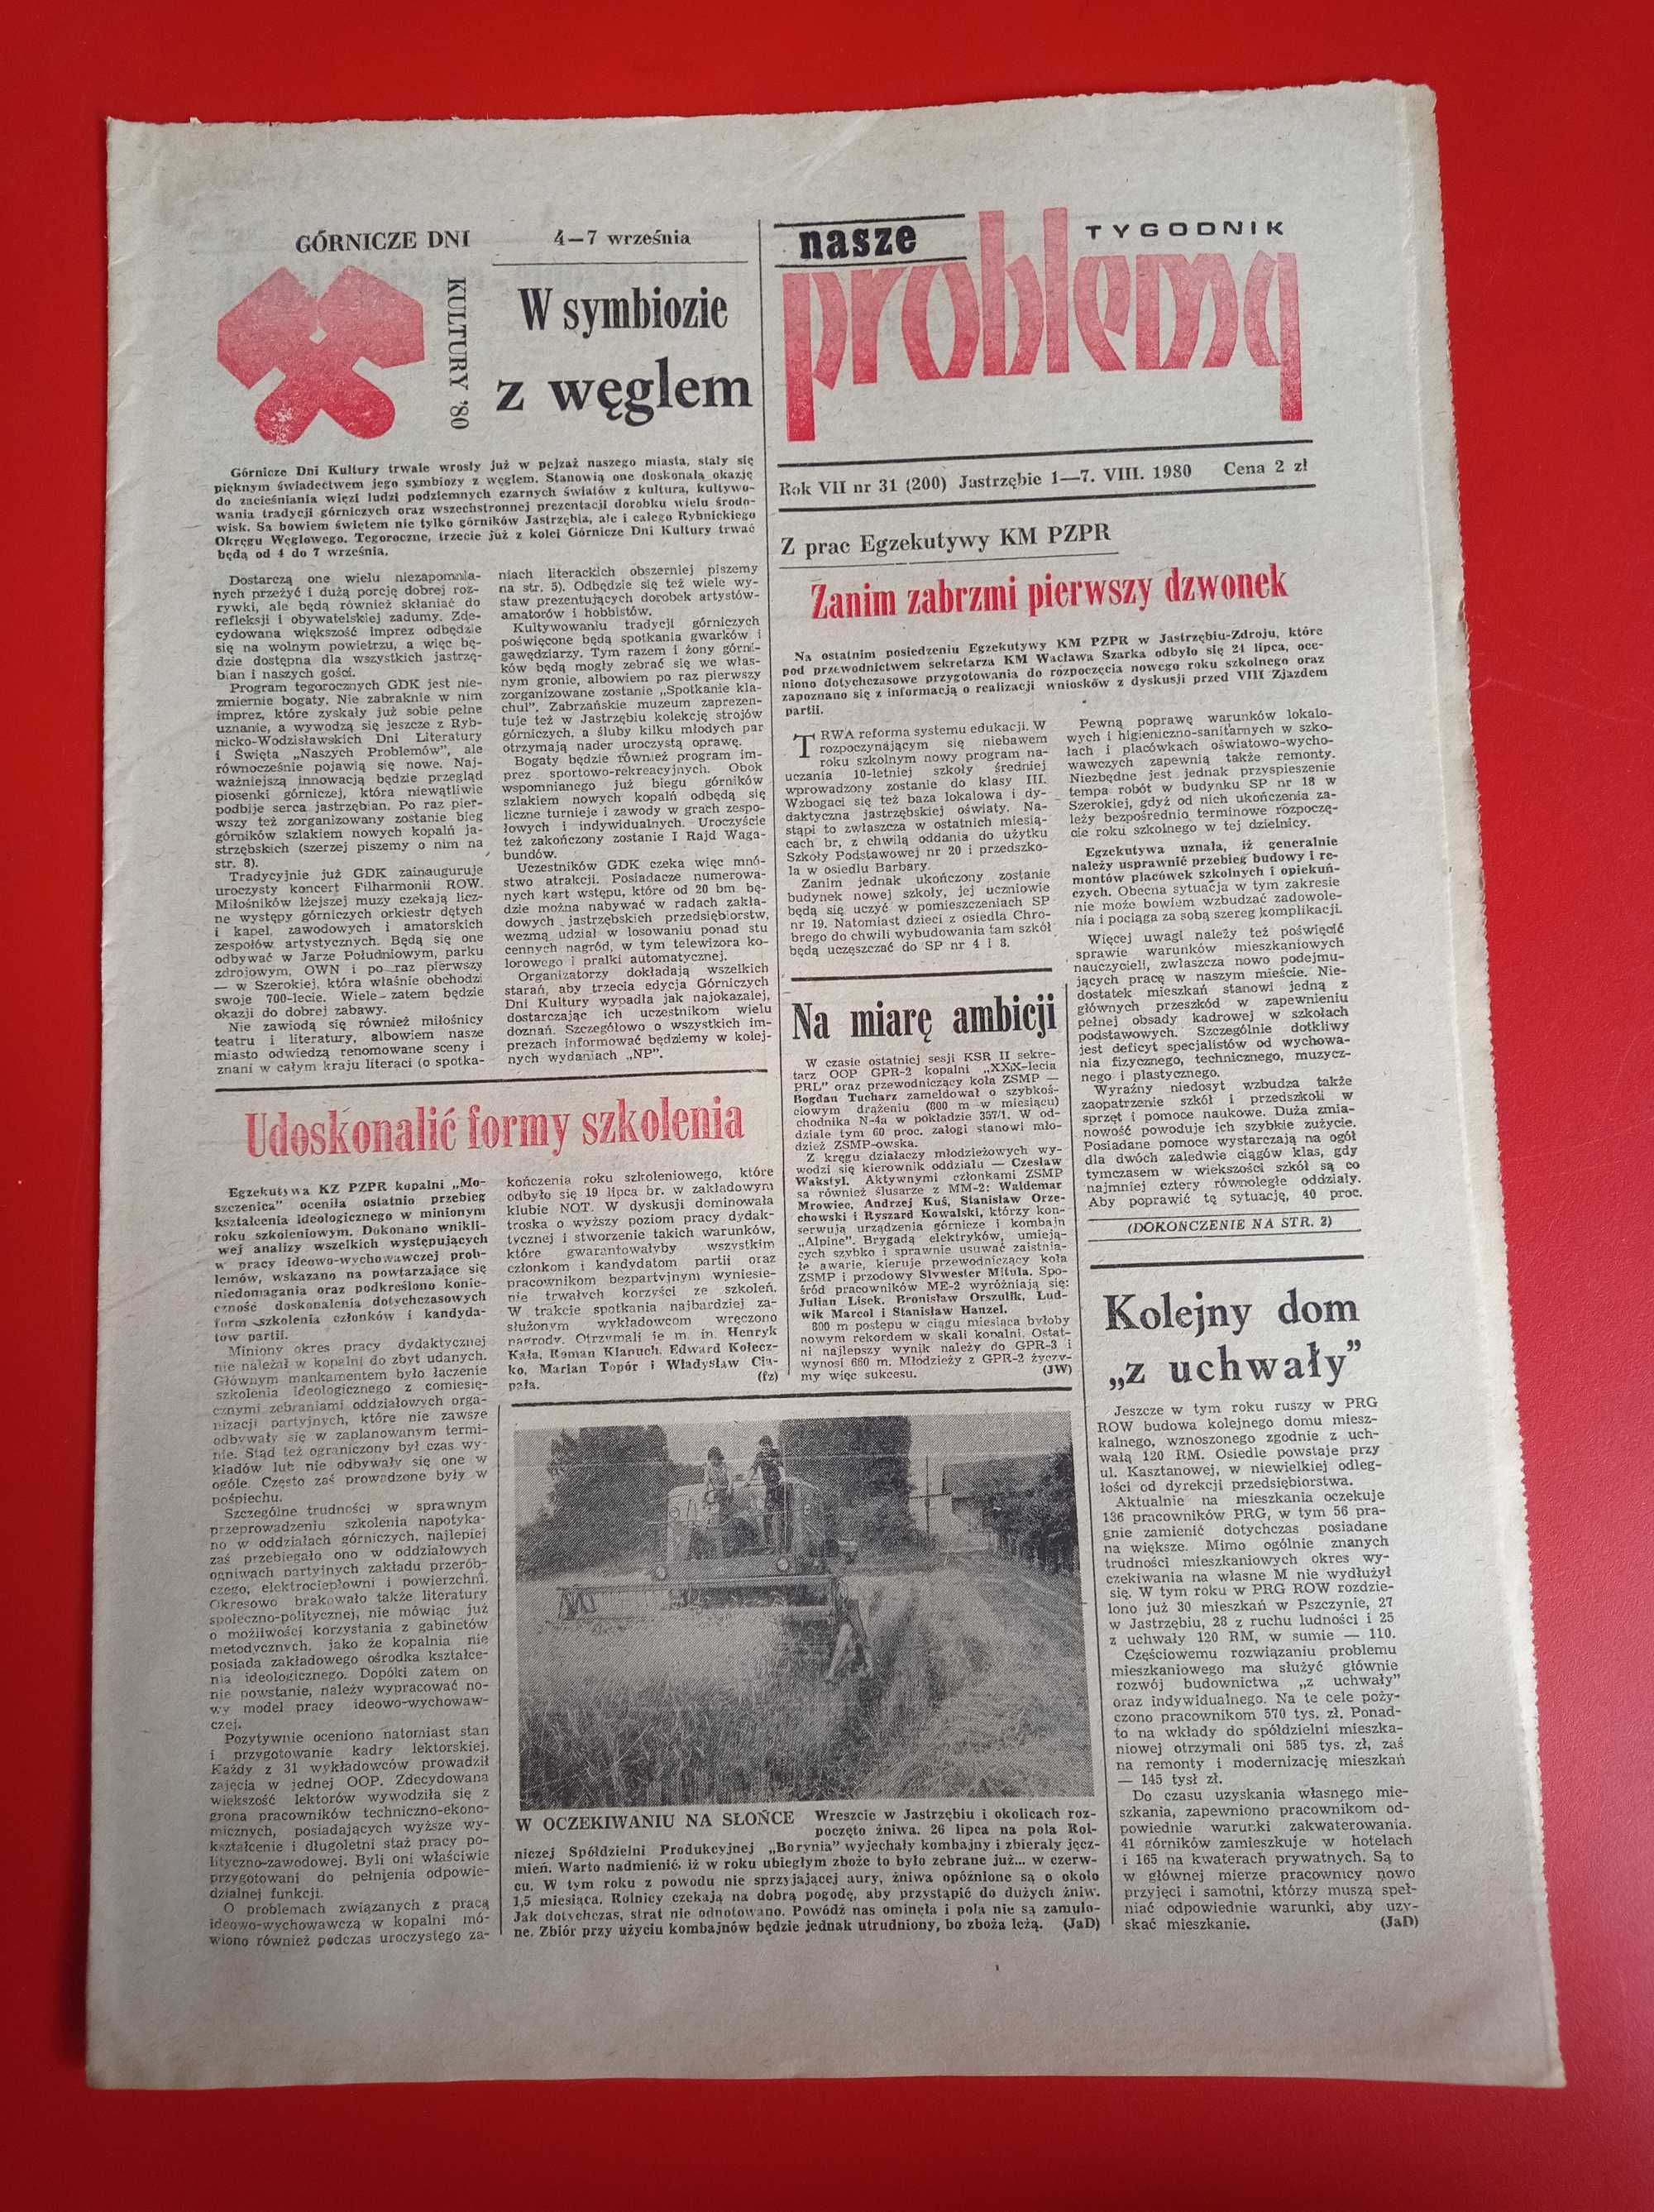 Nasze problemy, Jastrzębie, nr 31, 1-7 sierpnia 1980